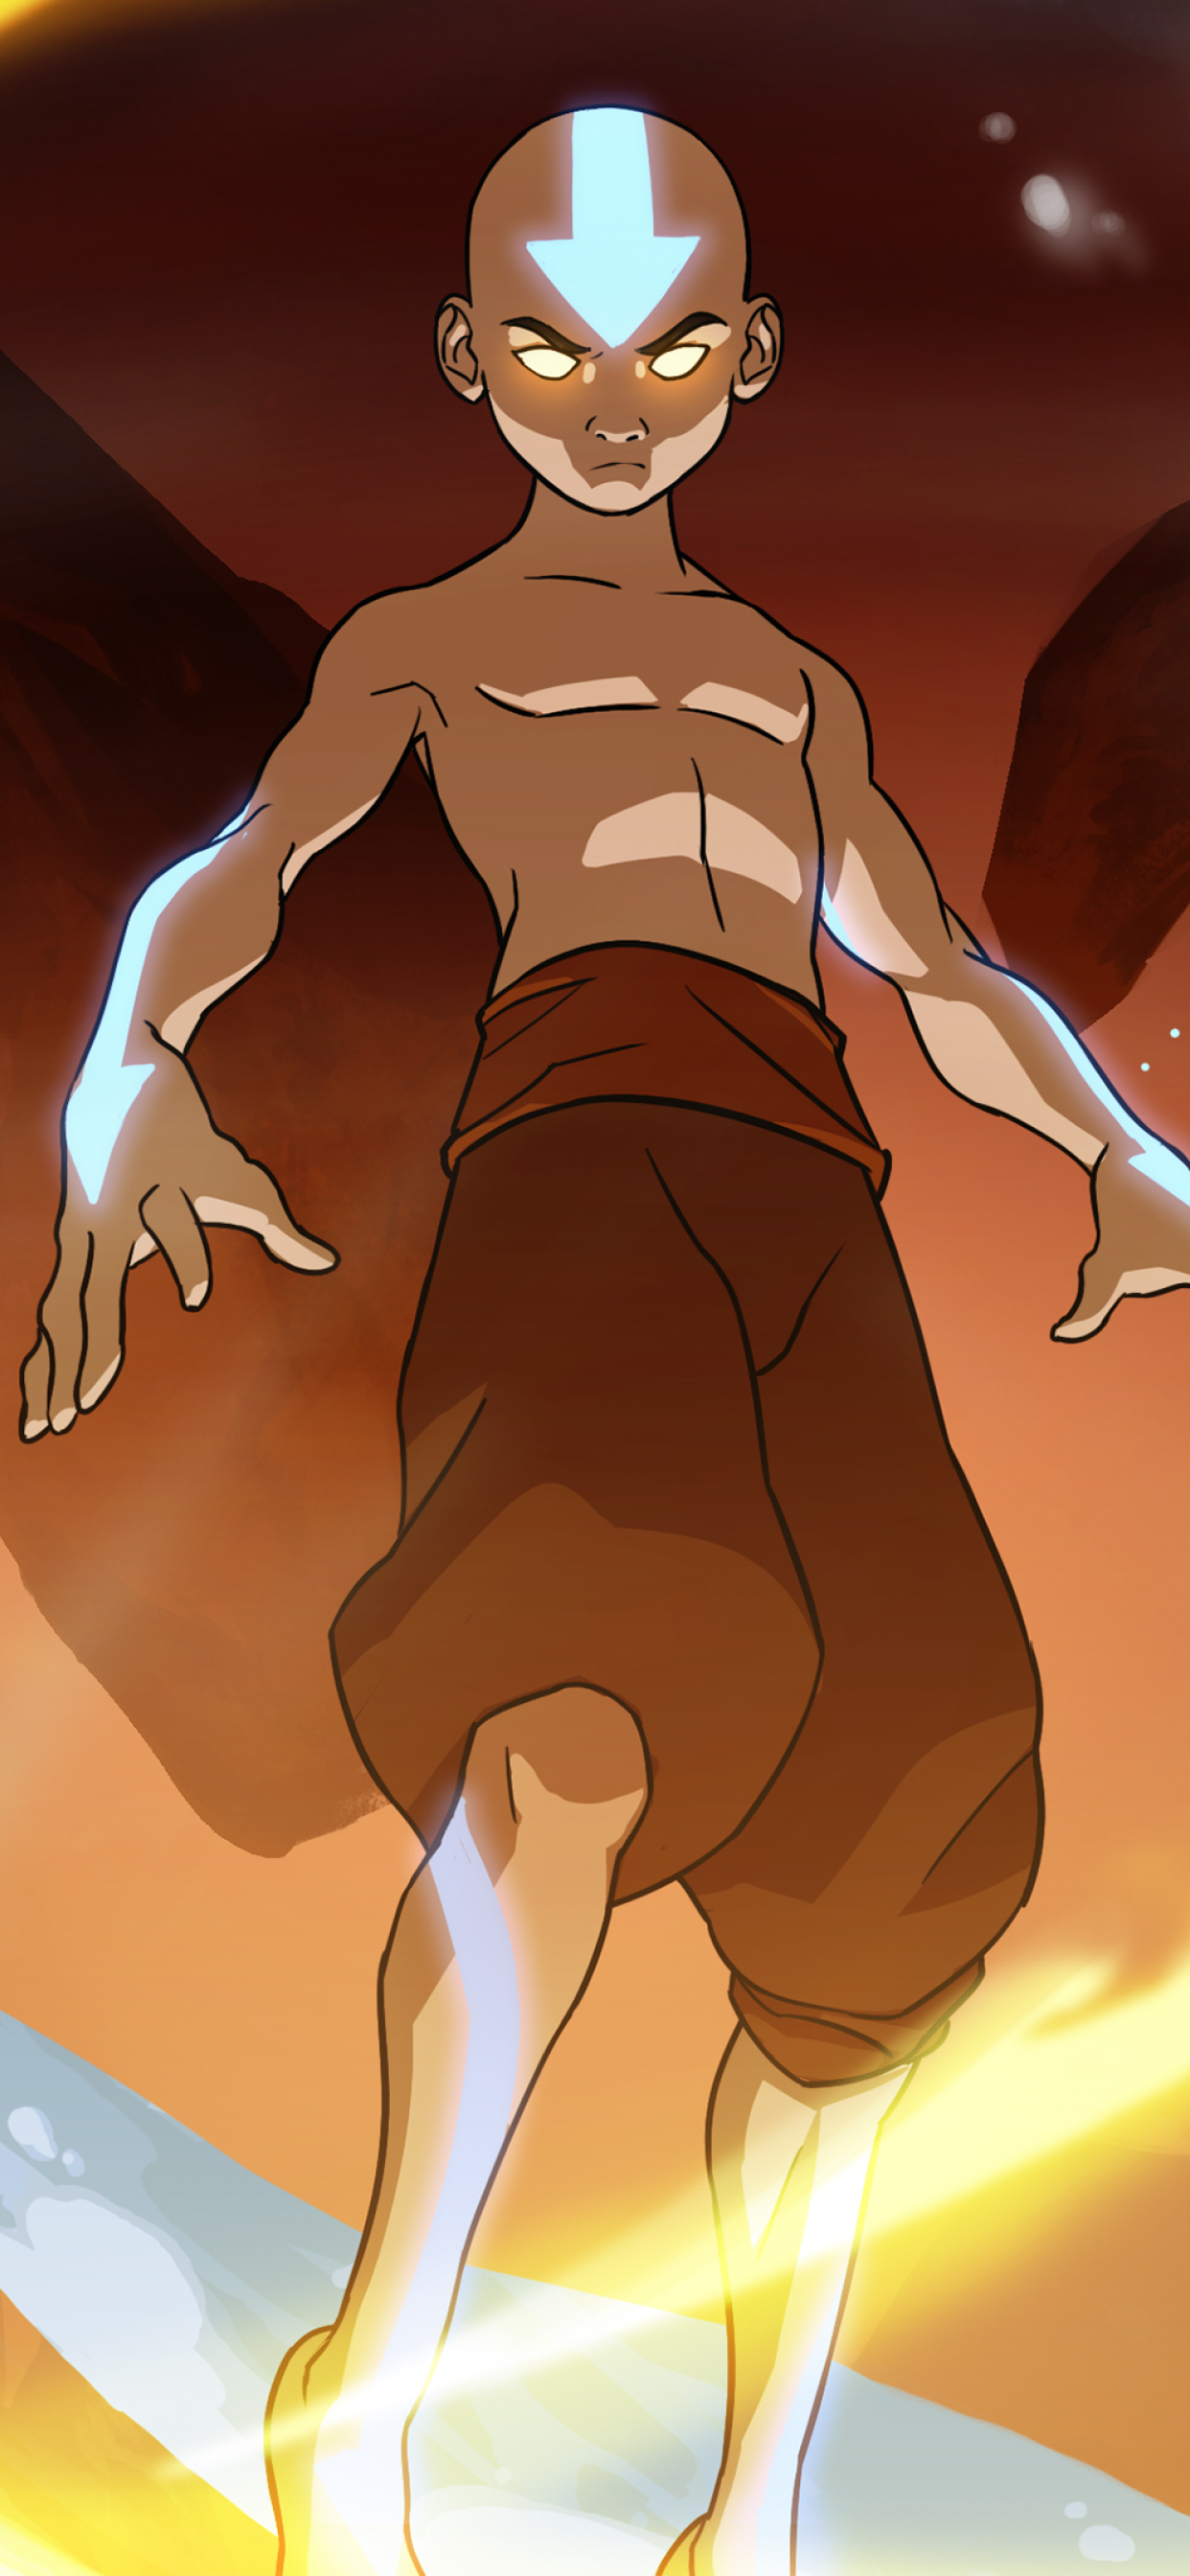 Aang  Avatar The Last Airbender  Wallpaper by Santeri Mutanen 3015252   Zerochan Anime Image Board